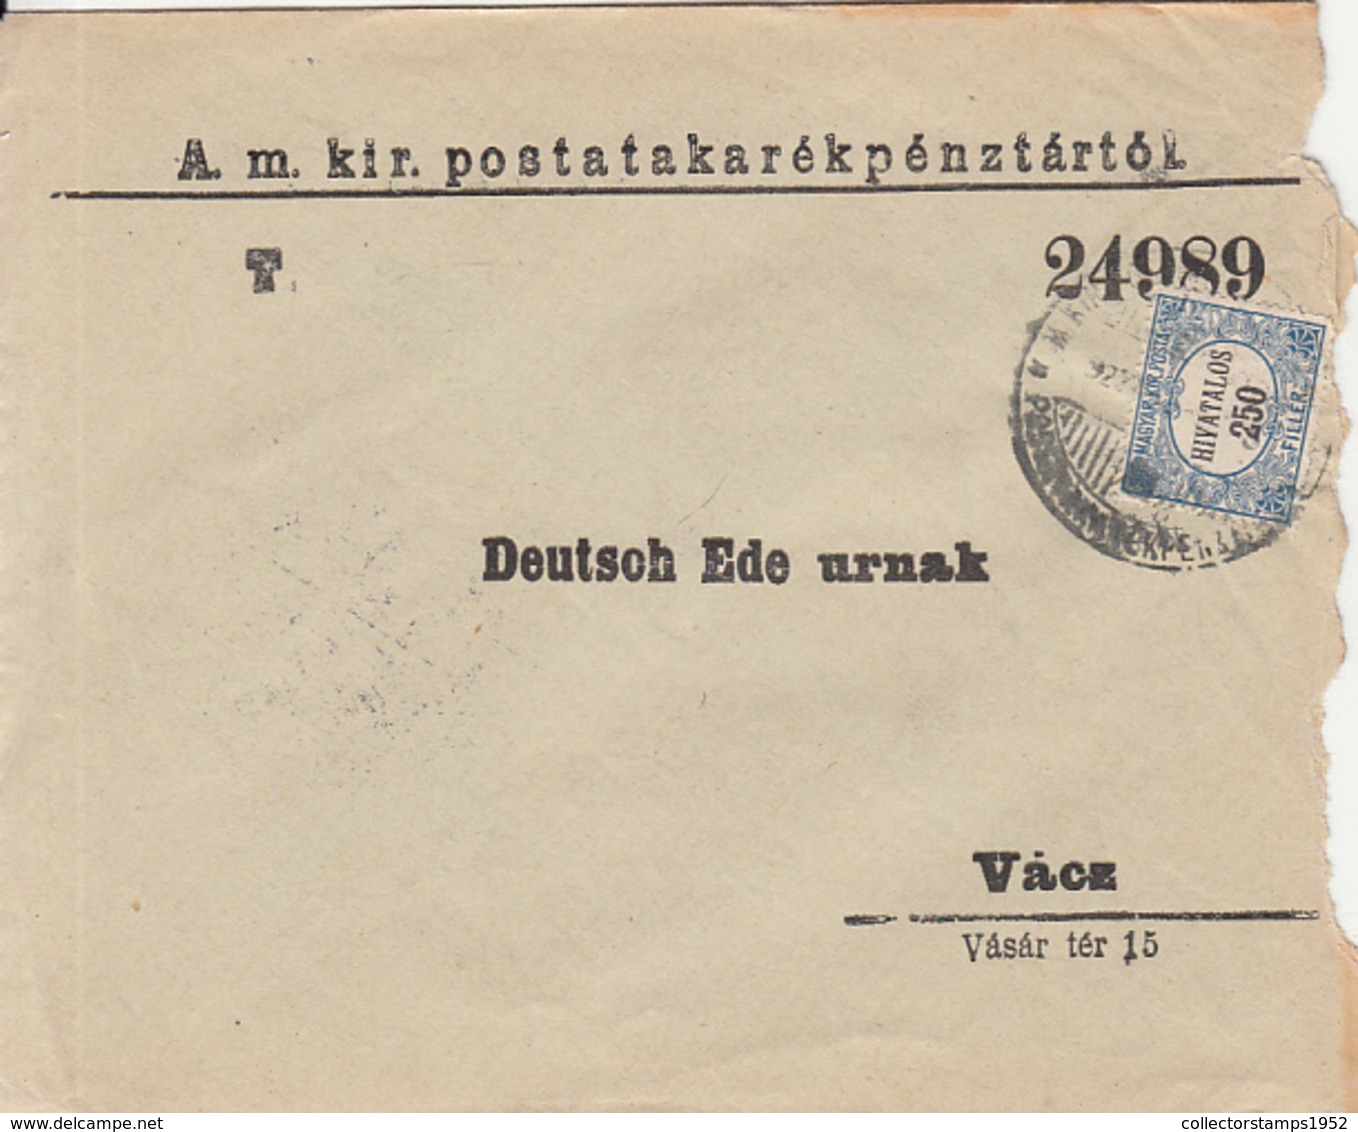 7344FM- 250 FILLER OFFICIAL STAMP ON POST SAVINGS BANK HEADER COVER, 1922, HUNGARY - Dienstzegels